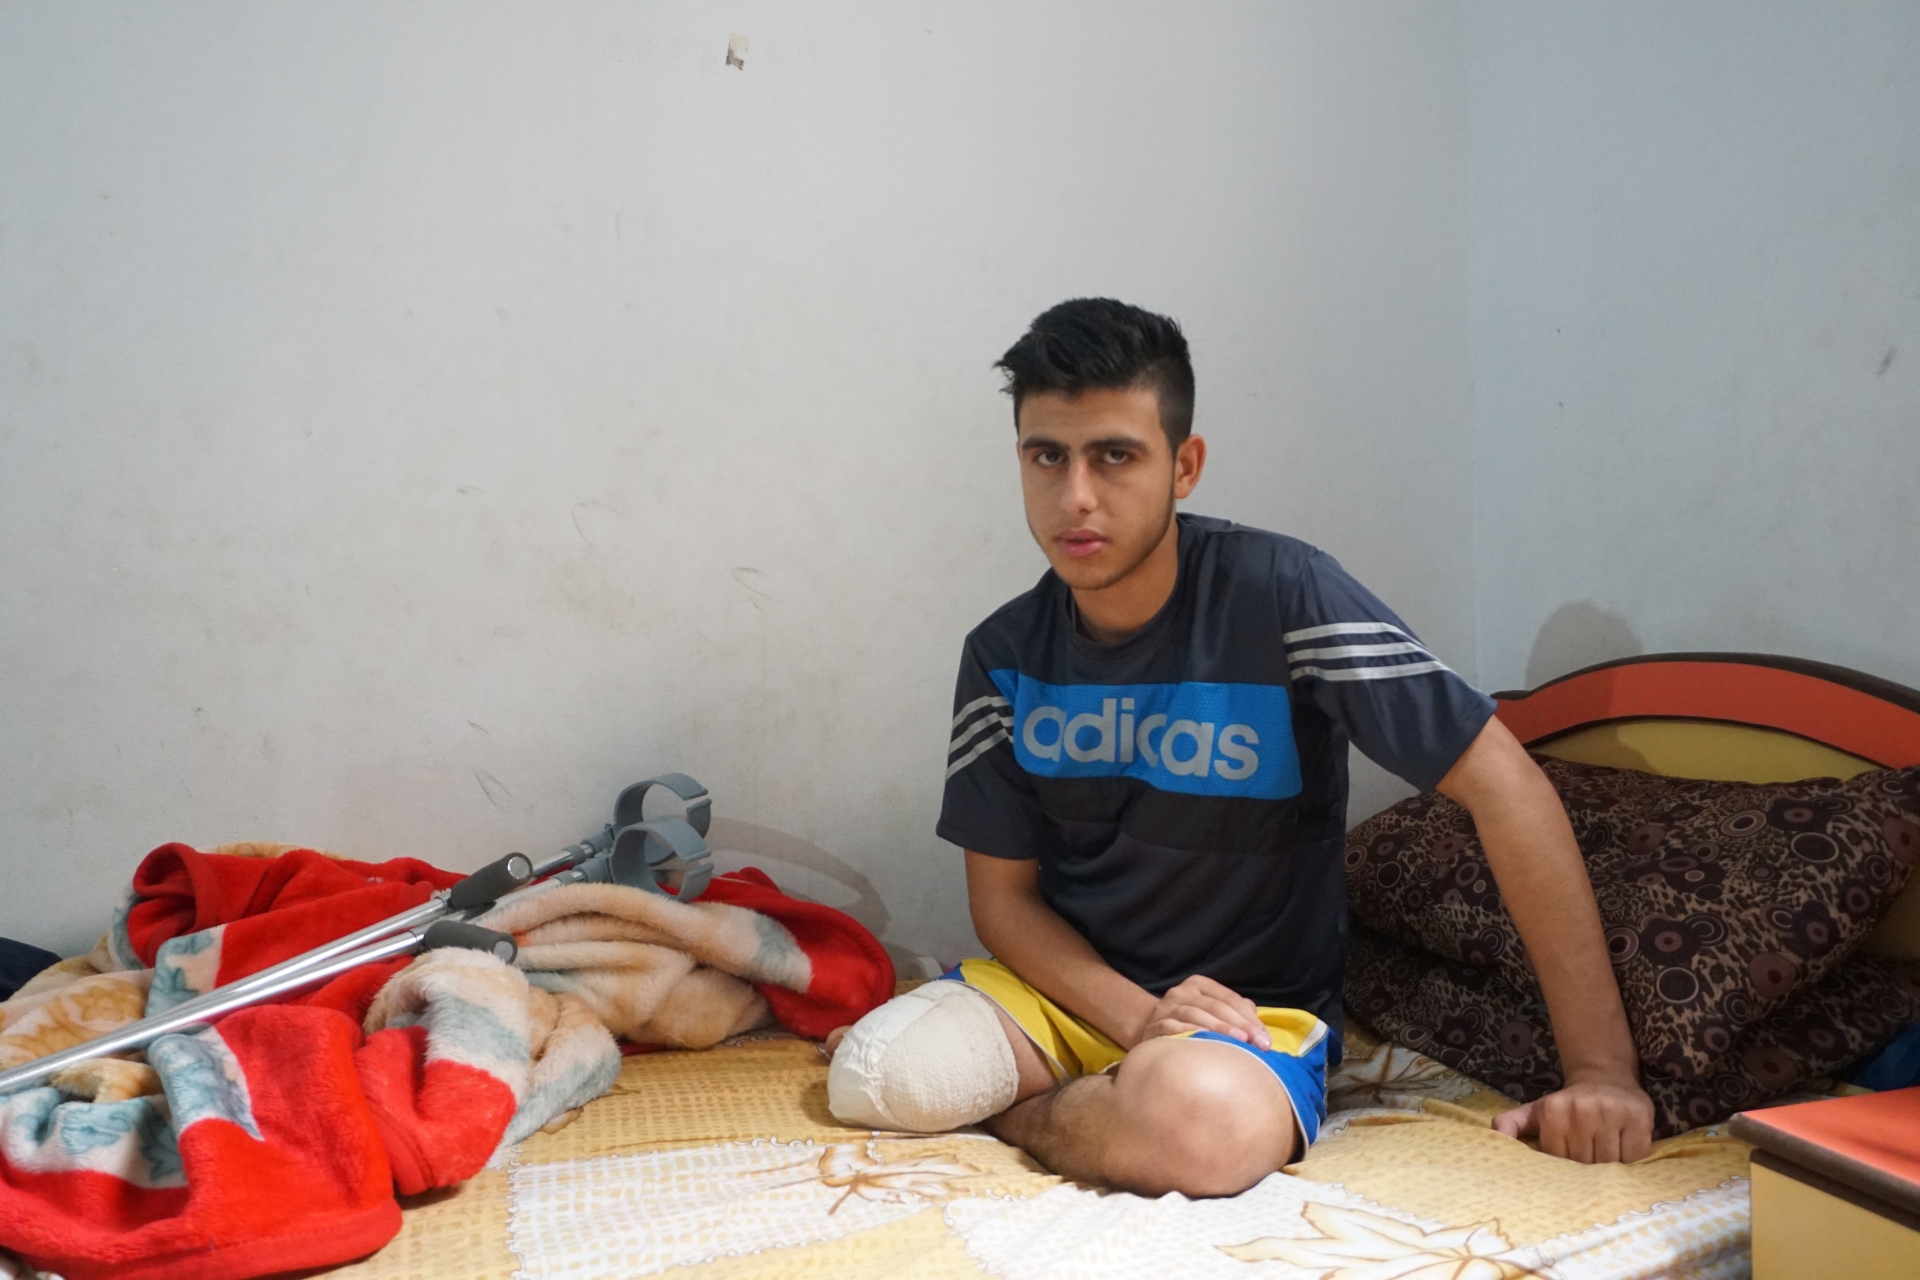 محمد العجوري، بُترت رجله اليمنى بعدما أطلقت القوات الإسرائيلية النار عليه وأصابته بجروح خلال مظاهرة شهدتها غزة في يوم 30 آذار/مارس  © - مكتب الأمم المتحدة لتنسيق الشؤون الإنسانية